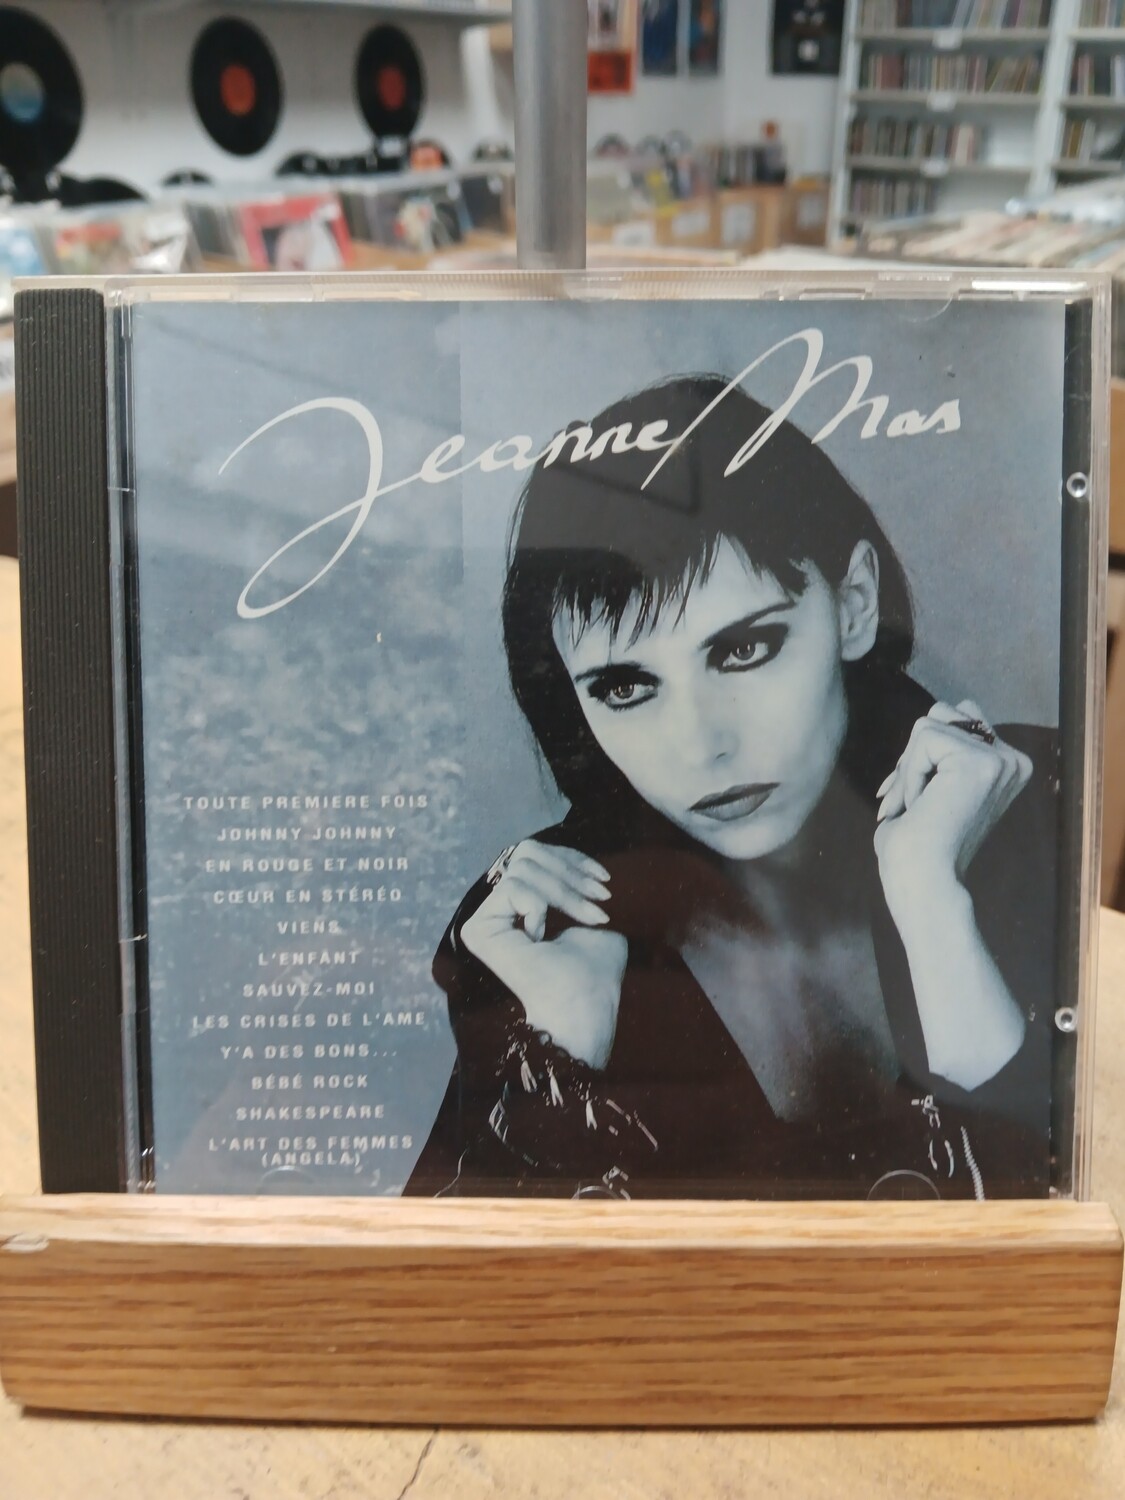 JEANNE MAS - Depuis la toute première fois (CD)